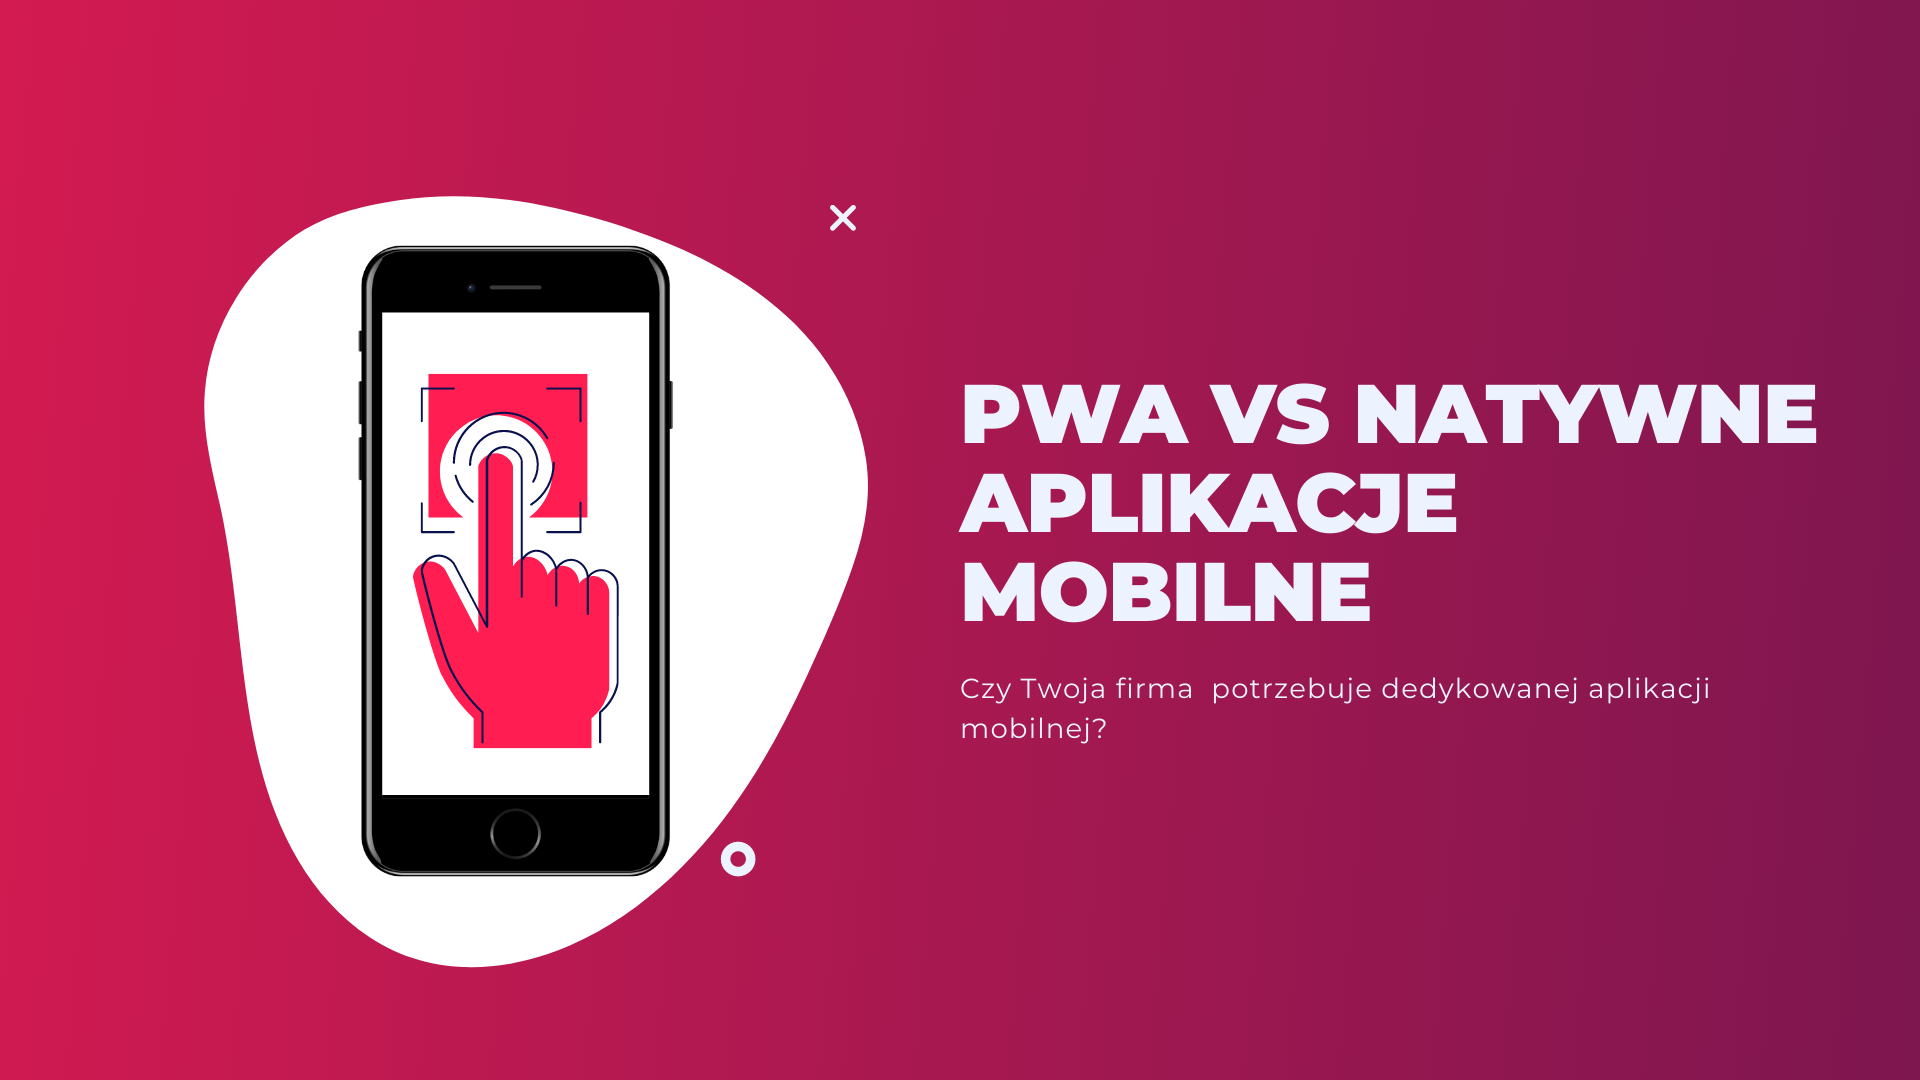 PWA czy aplikacja mobilna – czy Twój biznes faktycznie potrzebuje dedykowanej aplikacji mobilnej?